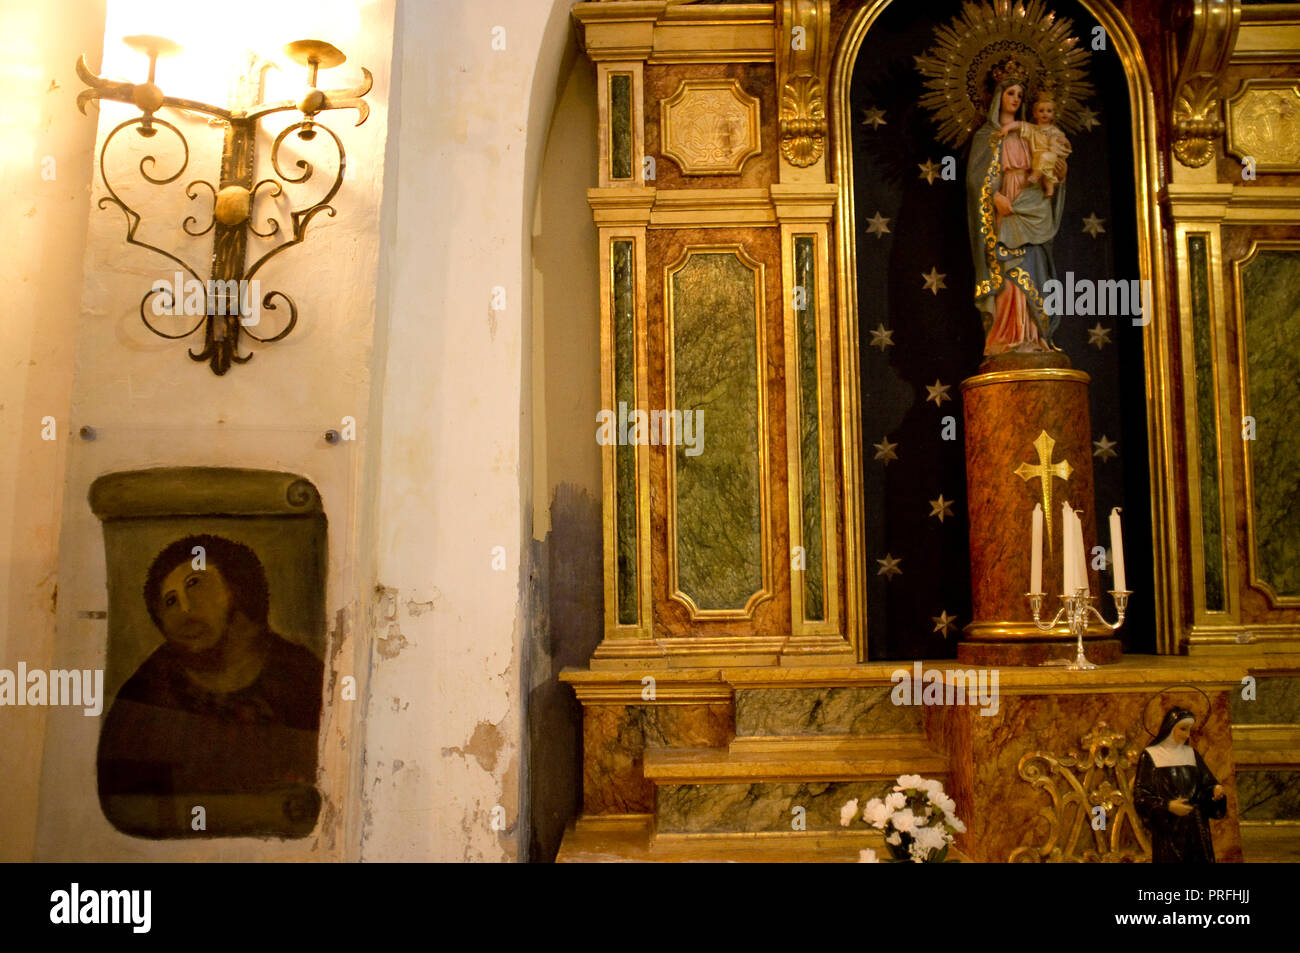 ECCE HOMO, Santuario della Misericordia La chiesa in Borja, Aragona, Spagna, originariamente dipinta da Elias Garcia Martinez e restaurato da Cecilia Gimenez Zueco. Foto Stock